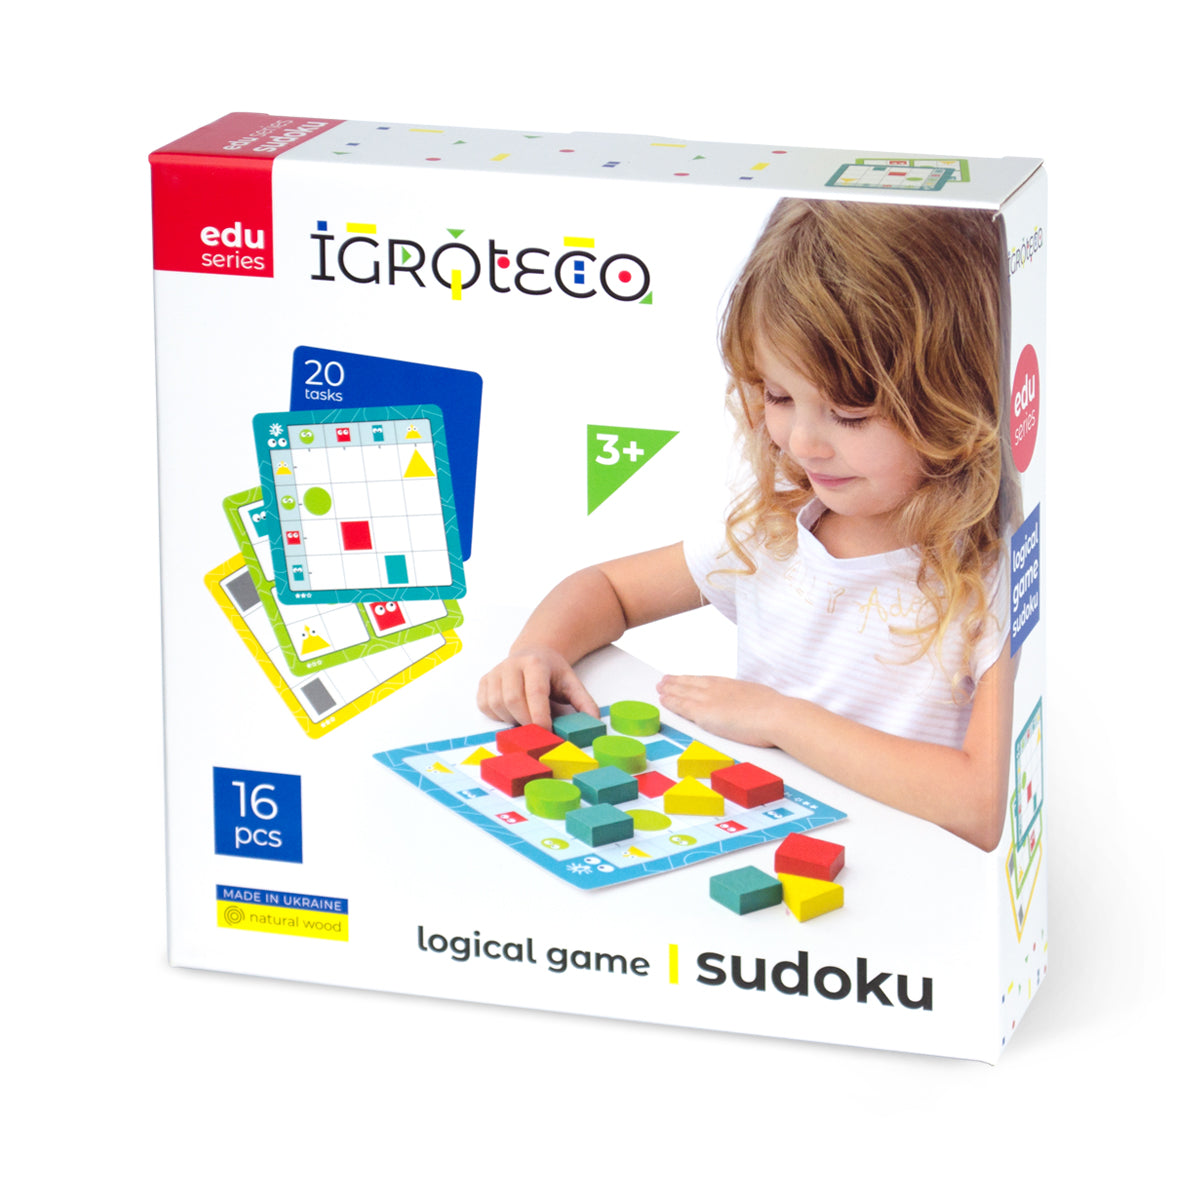 Igroteco attīstošā koka spēle bērniem Sudoku, 16 gb.